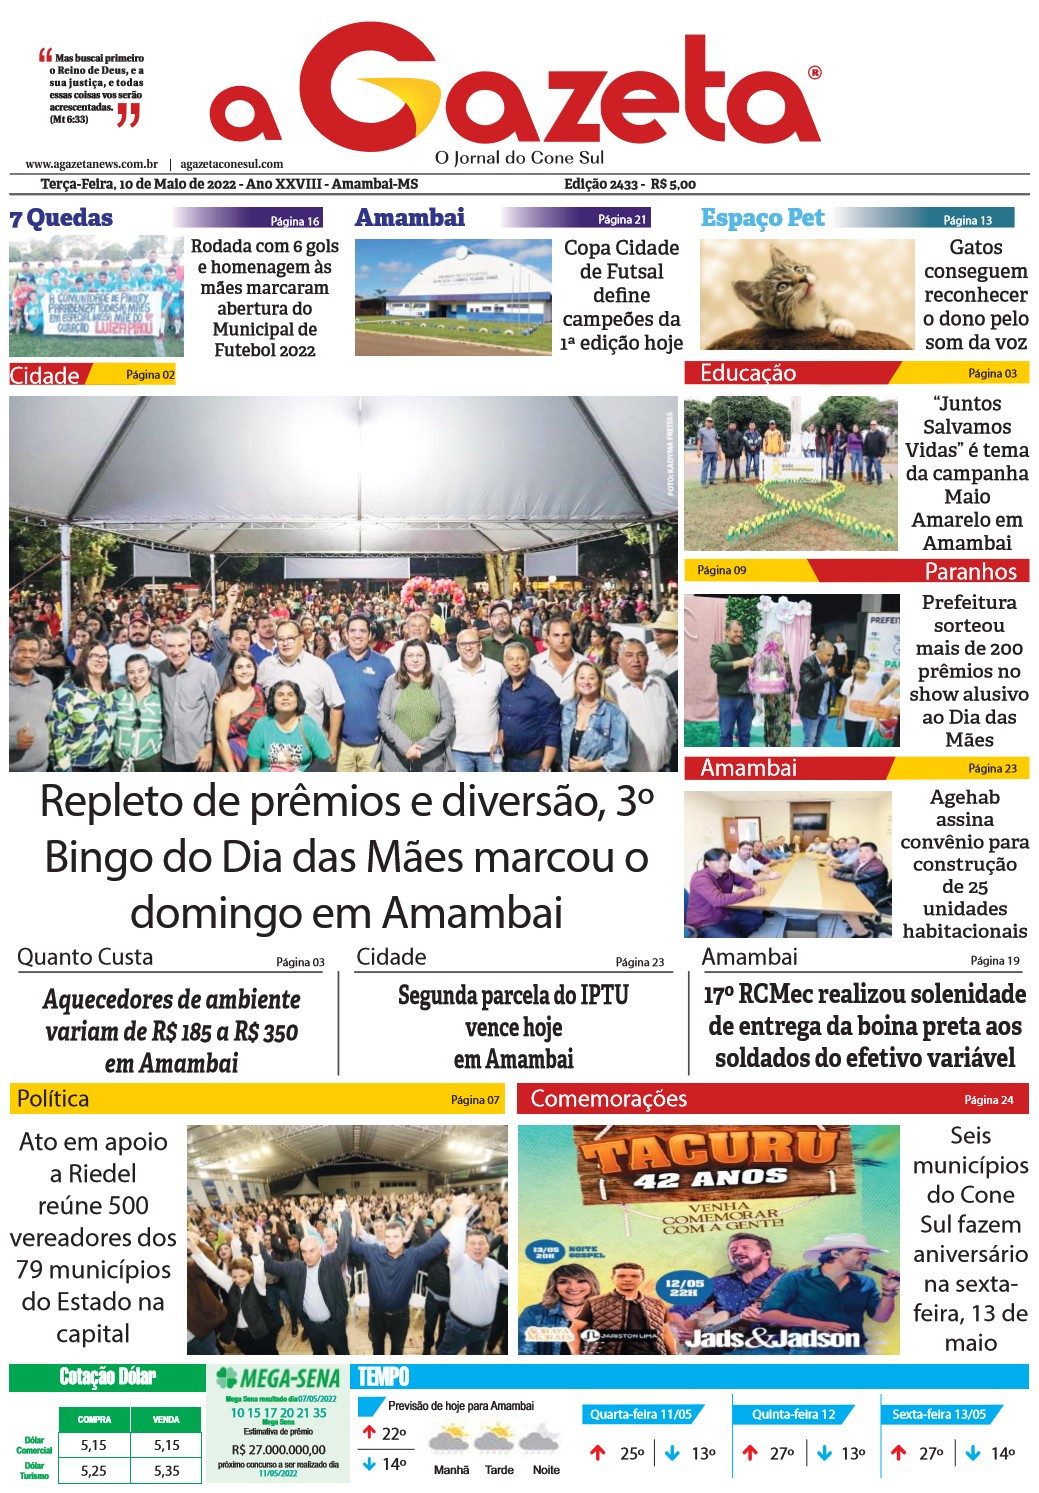 Confira a versão digital do jornal impresso A Gazeta desta terça-feira, dia 10